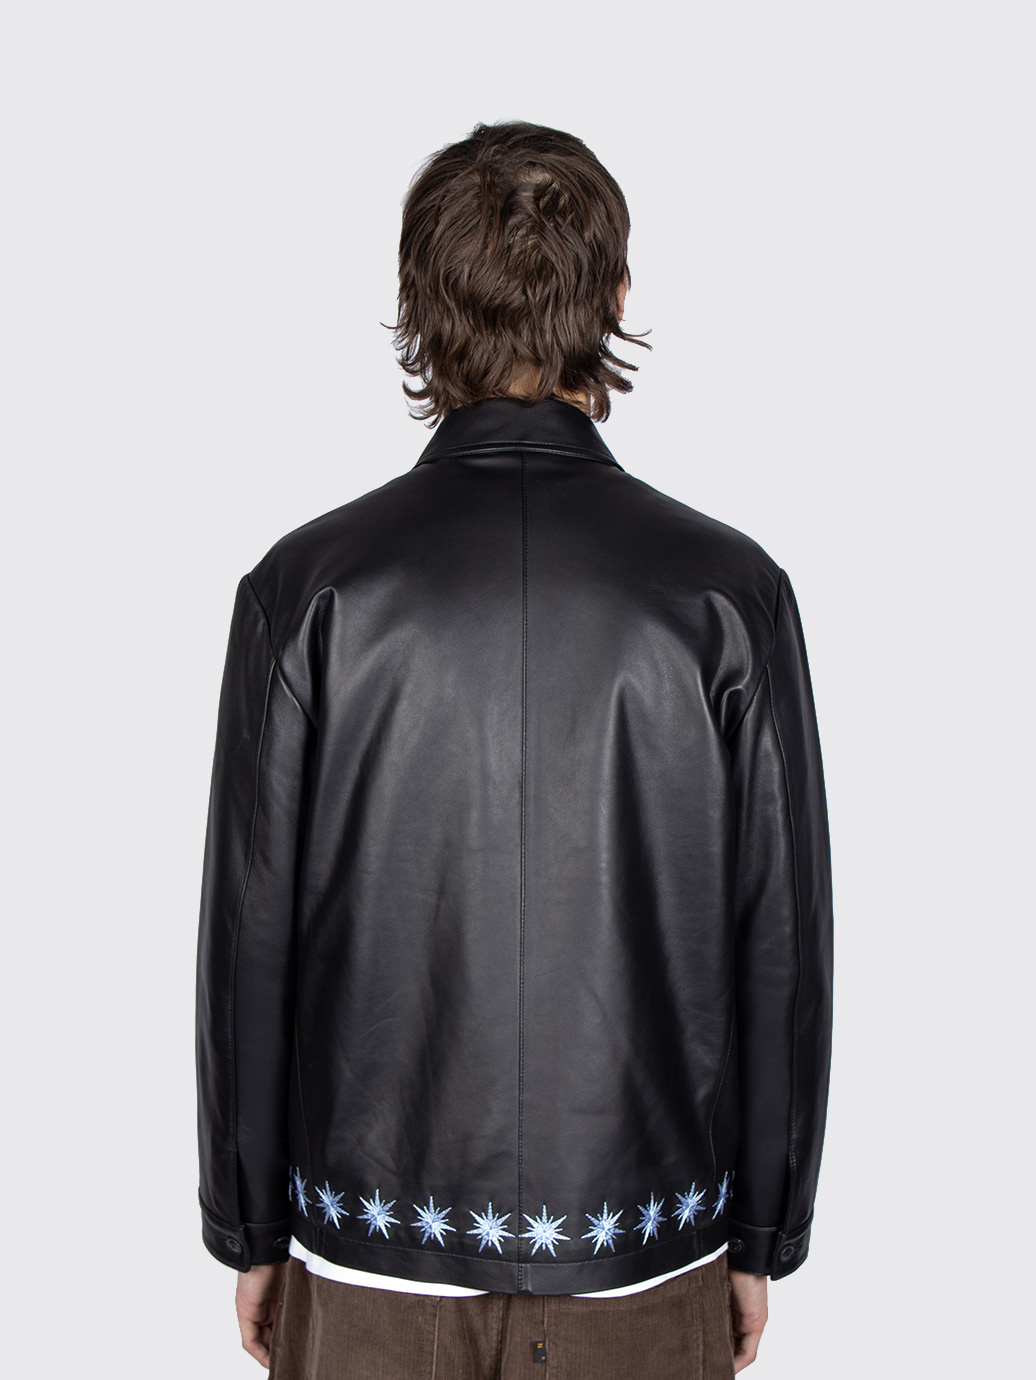 BOTT Sparkle Leather Jacket Black - アウター